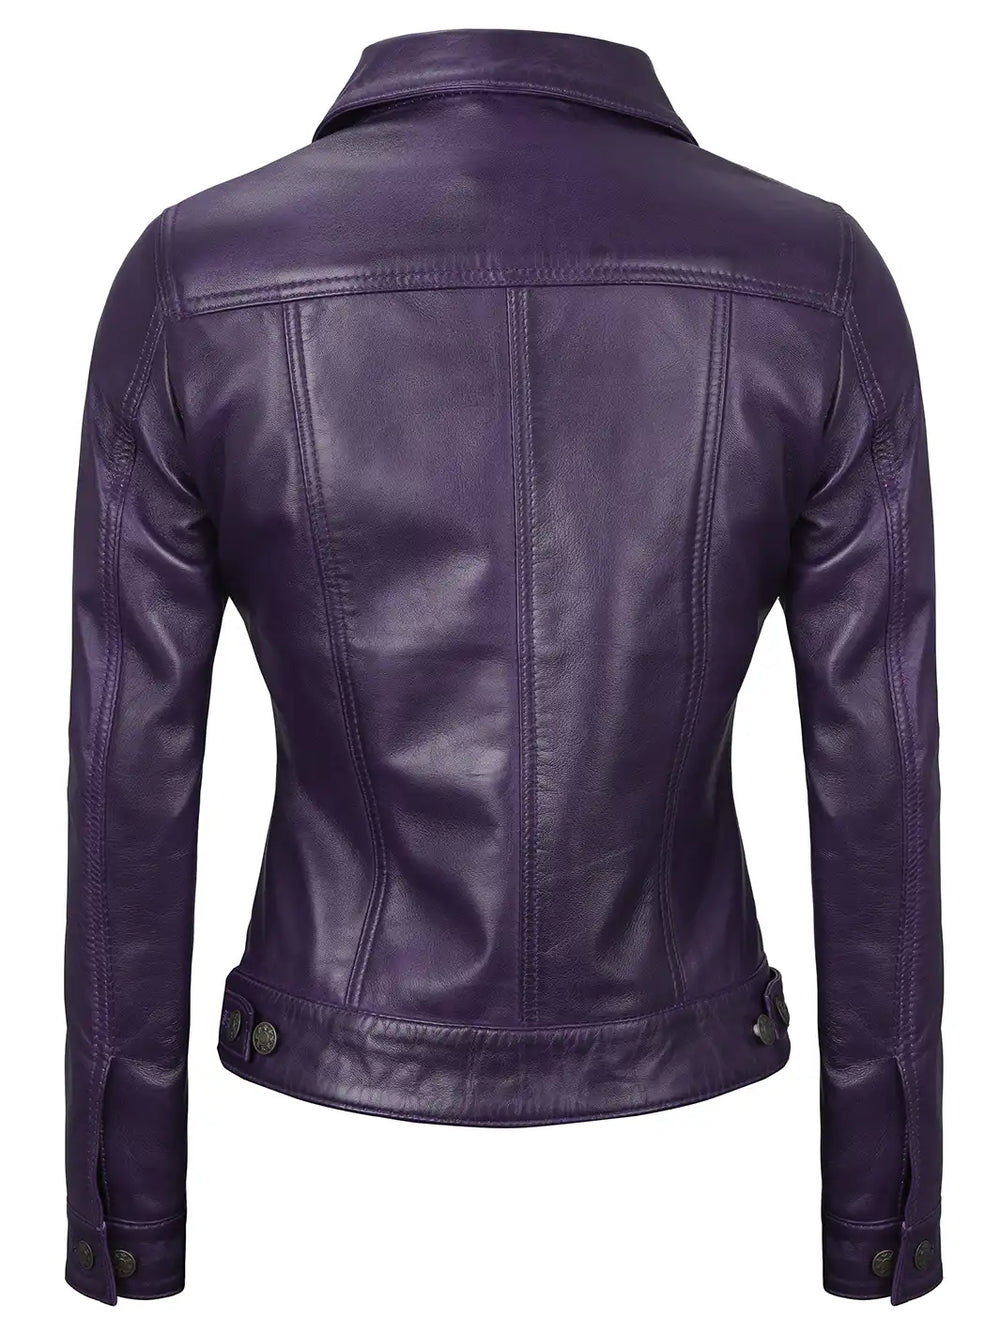 Women leather trucker jacket